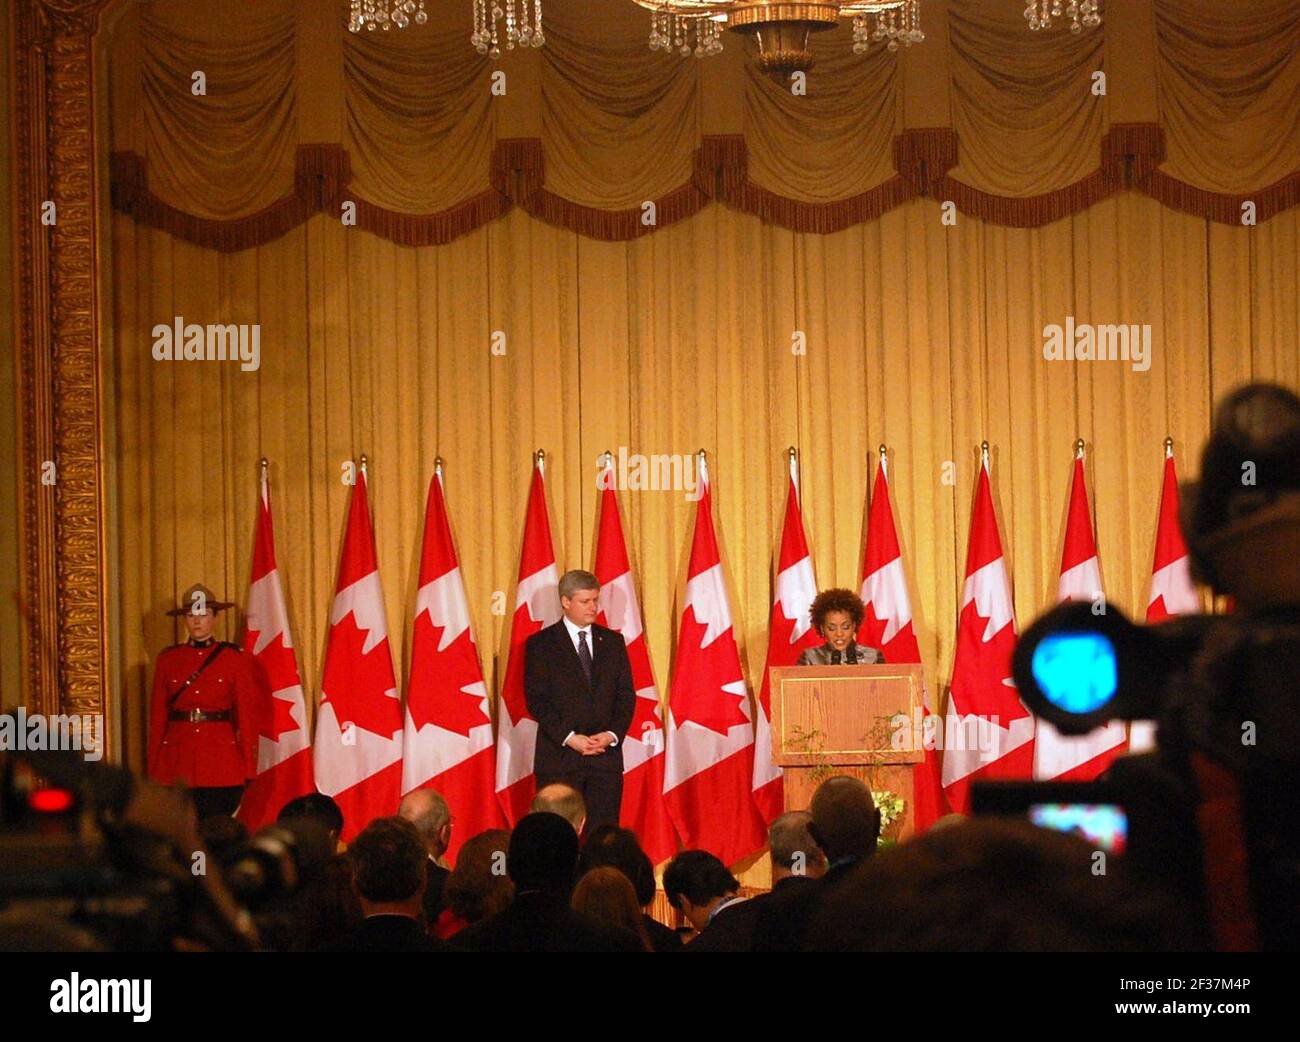 Le Premier ministre du Canada Stephen Harper et la gouverneure générale du Canada Michaëlle Jean @ réception des chefs d’État aux Jeux olympiques d’hiver de 2010 à Vancouver. Banque D'Images